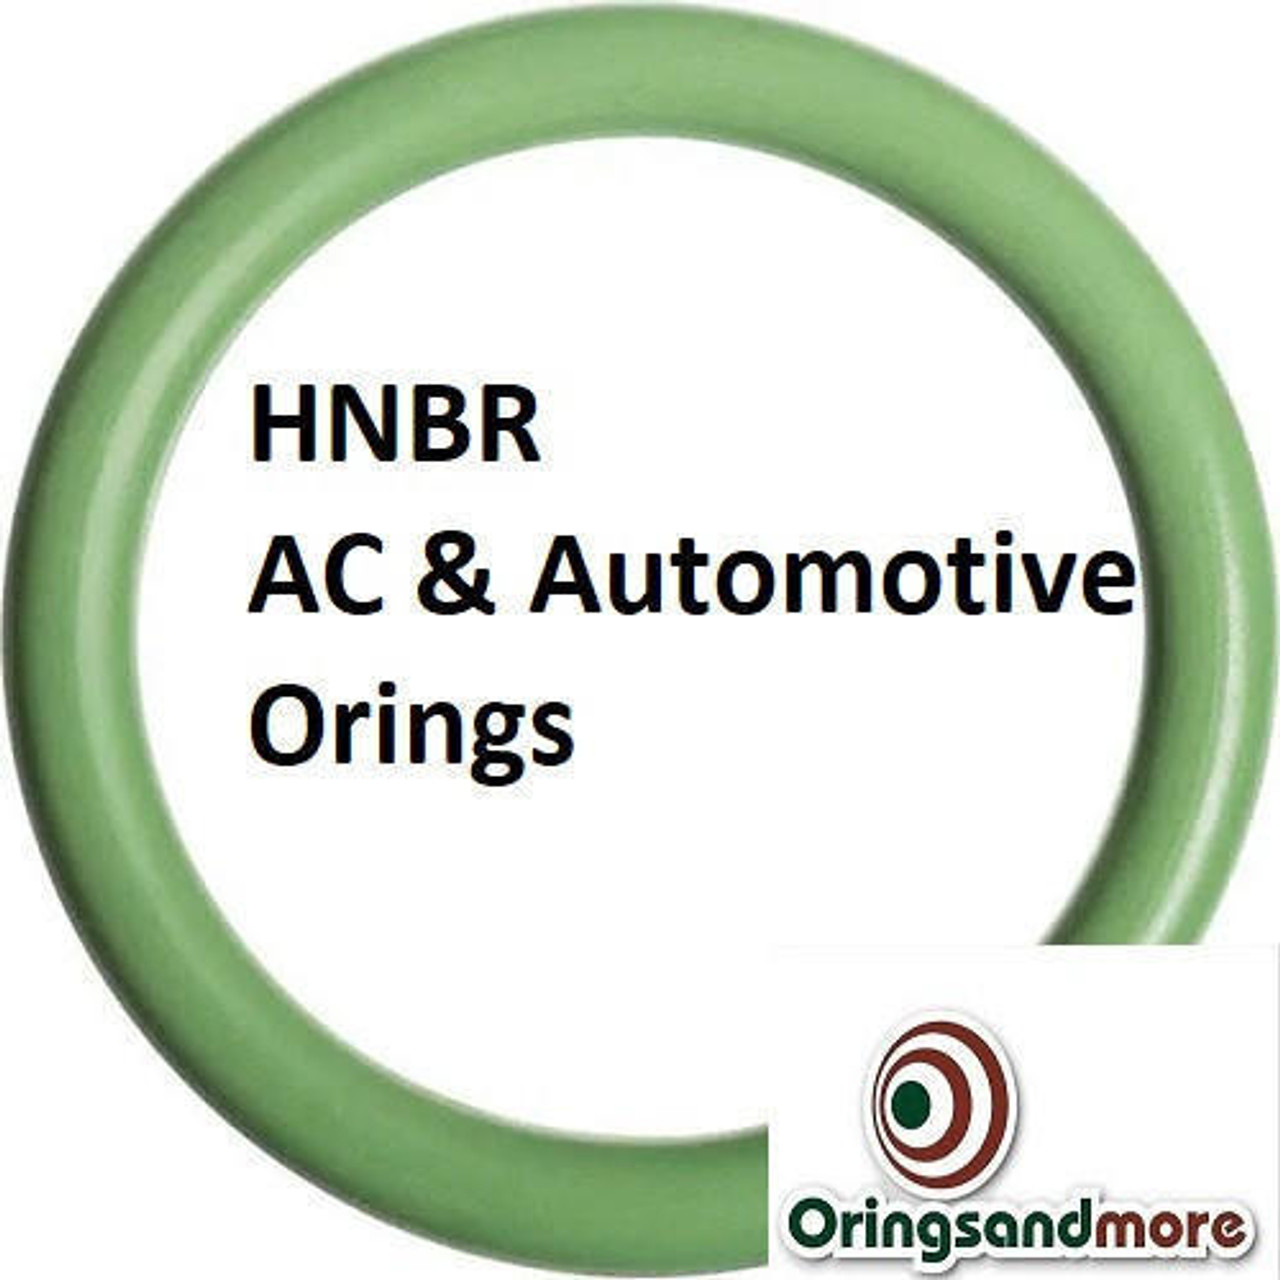 HNBR Orings  # 119-70D Green Minimum 10 pcs